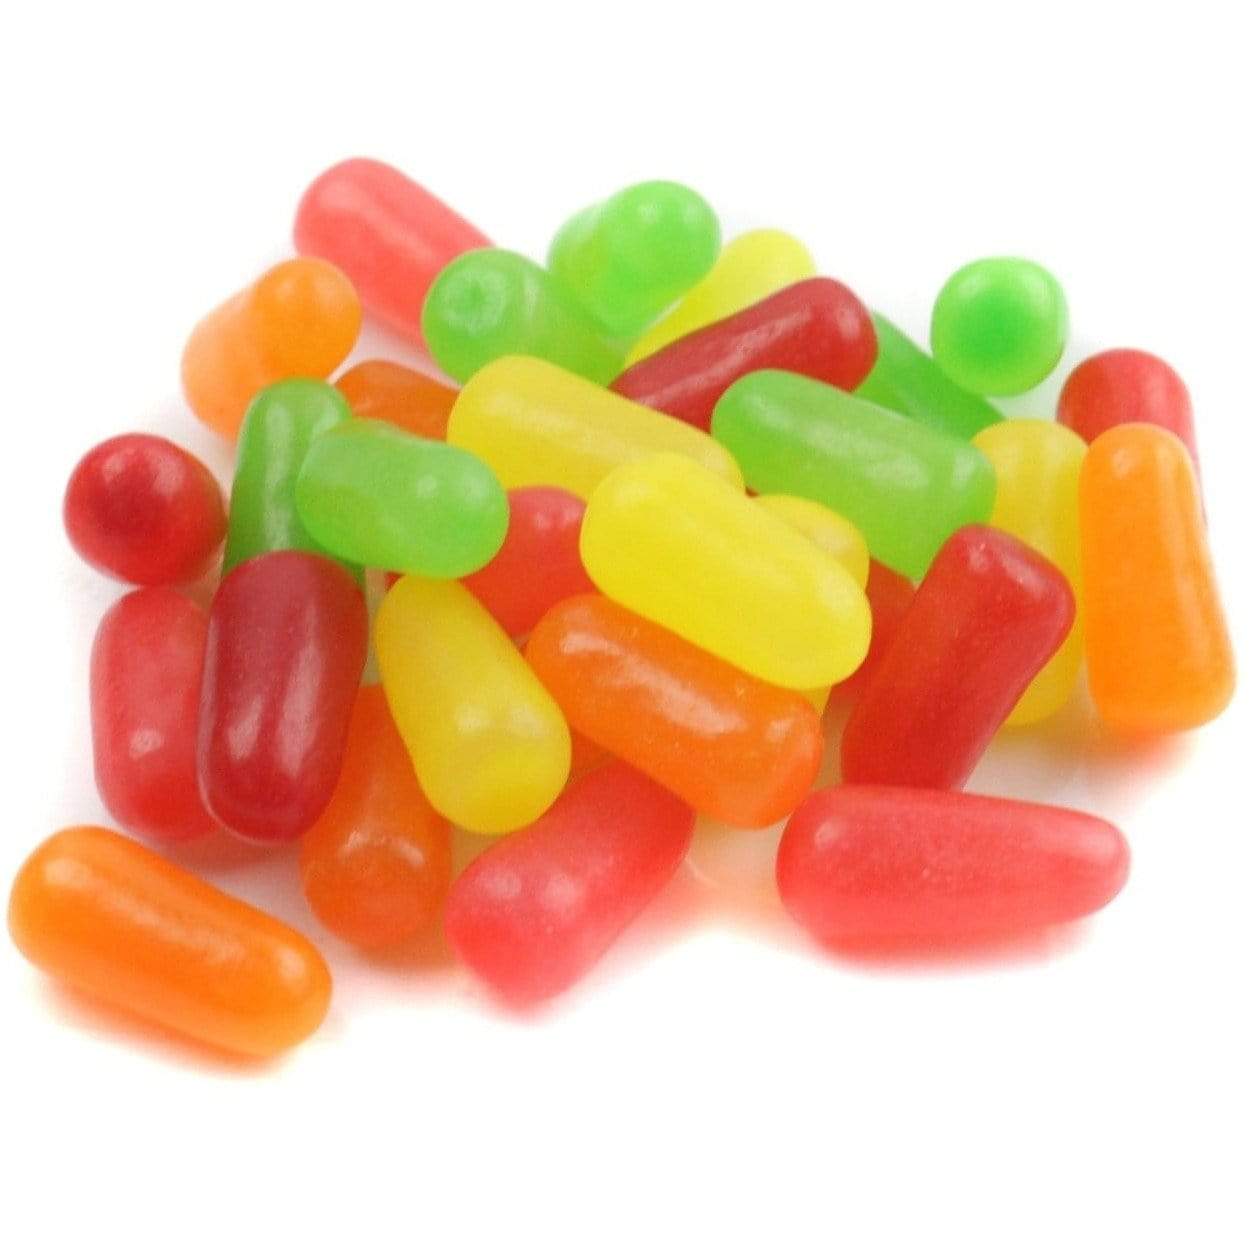 Des bonbons en formes de pilules jaune, rouge, verte et orange, le tout sur fond blanc